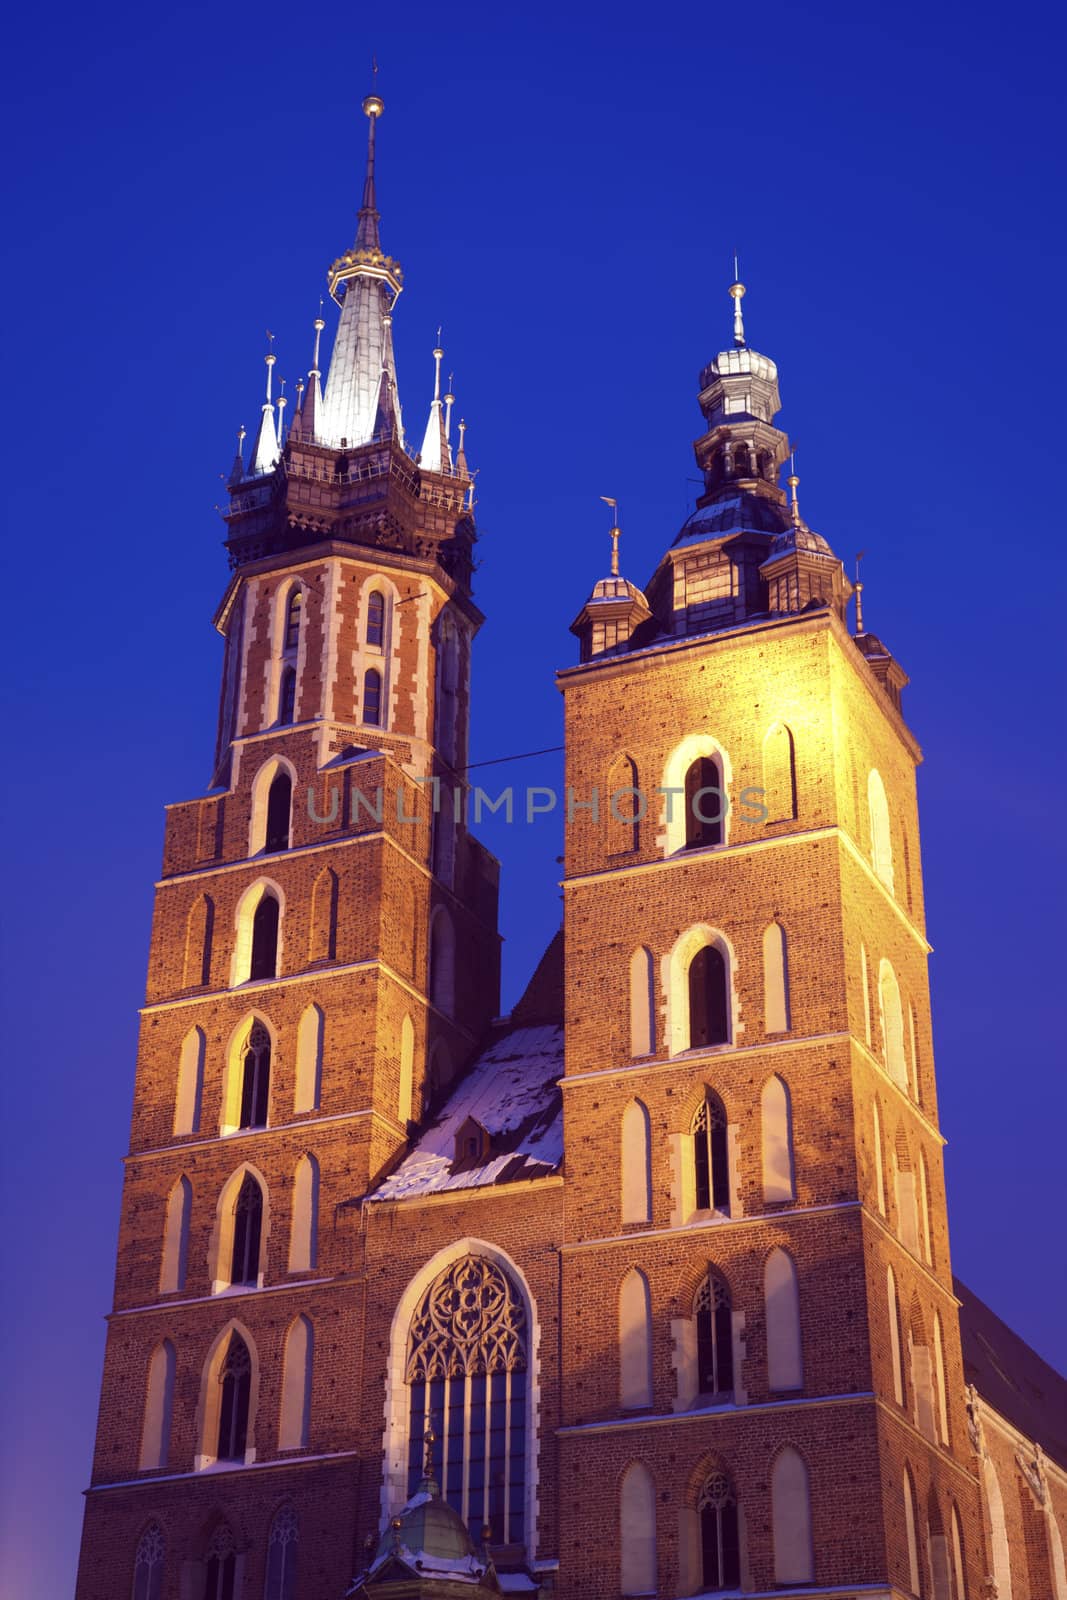 St. Mary's Church in Krakow by benkrut